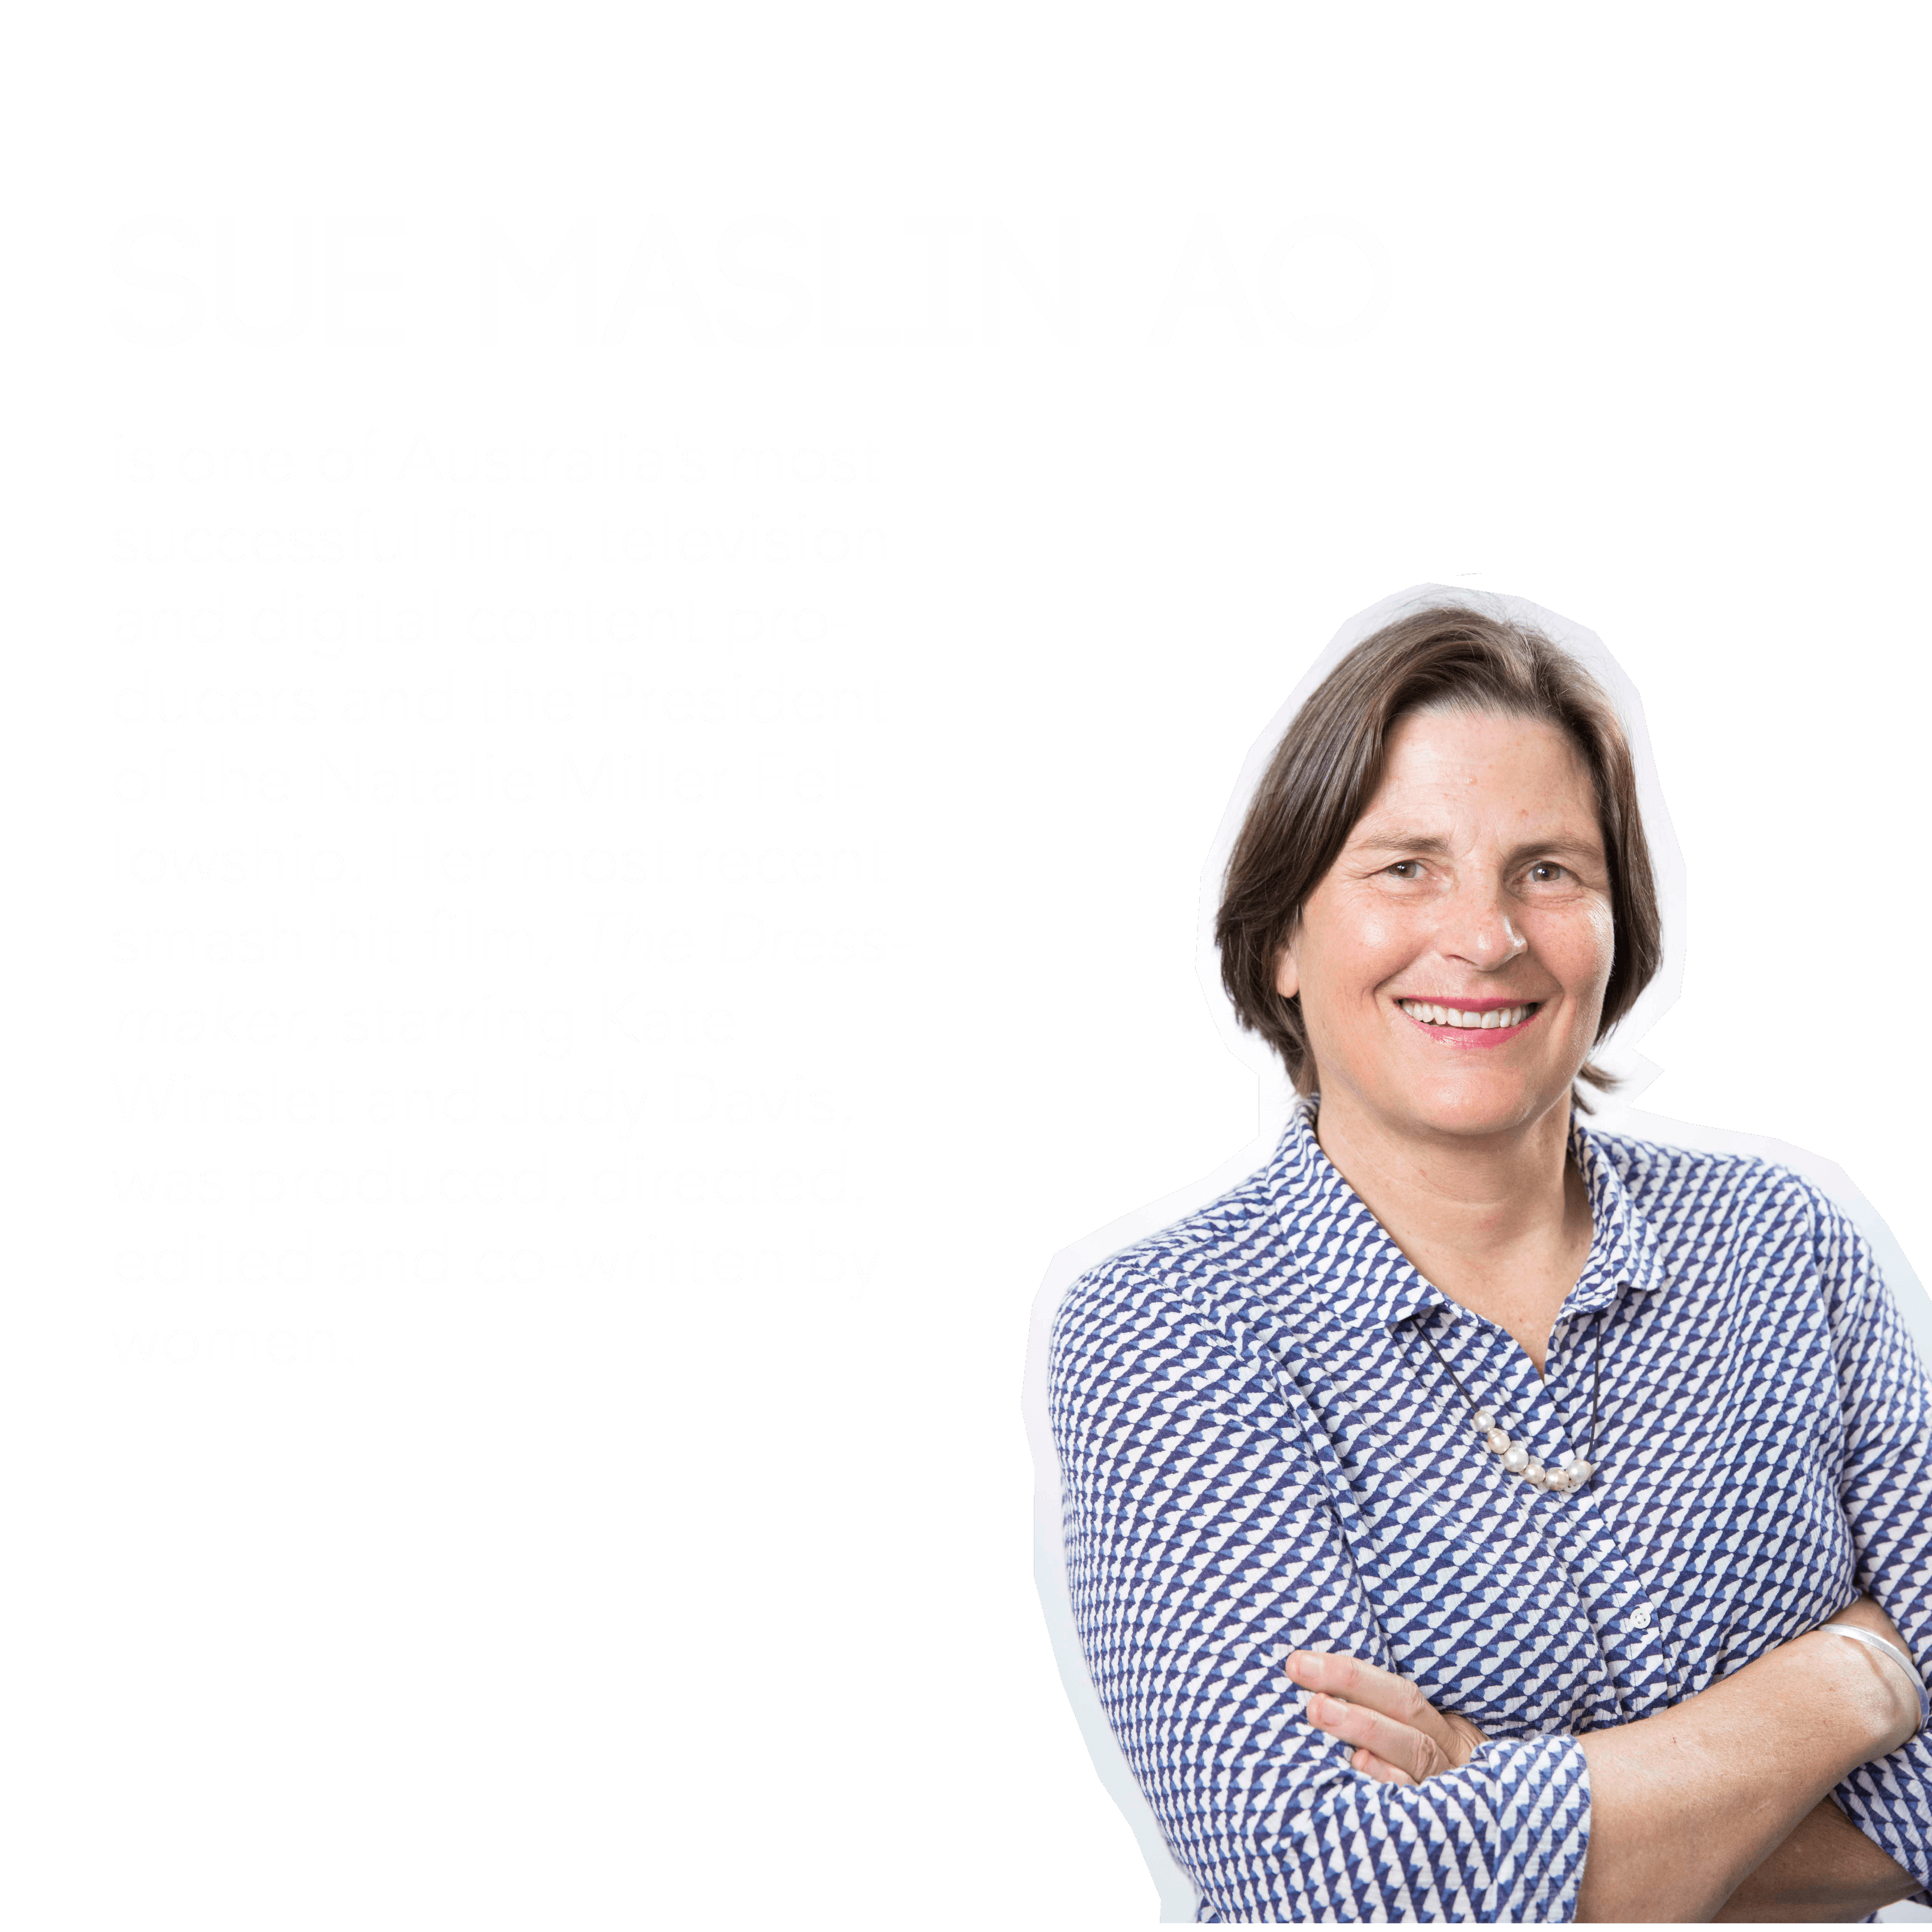 Sue Maslin AO